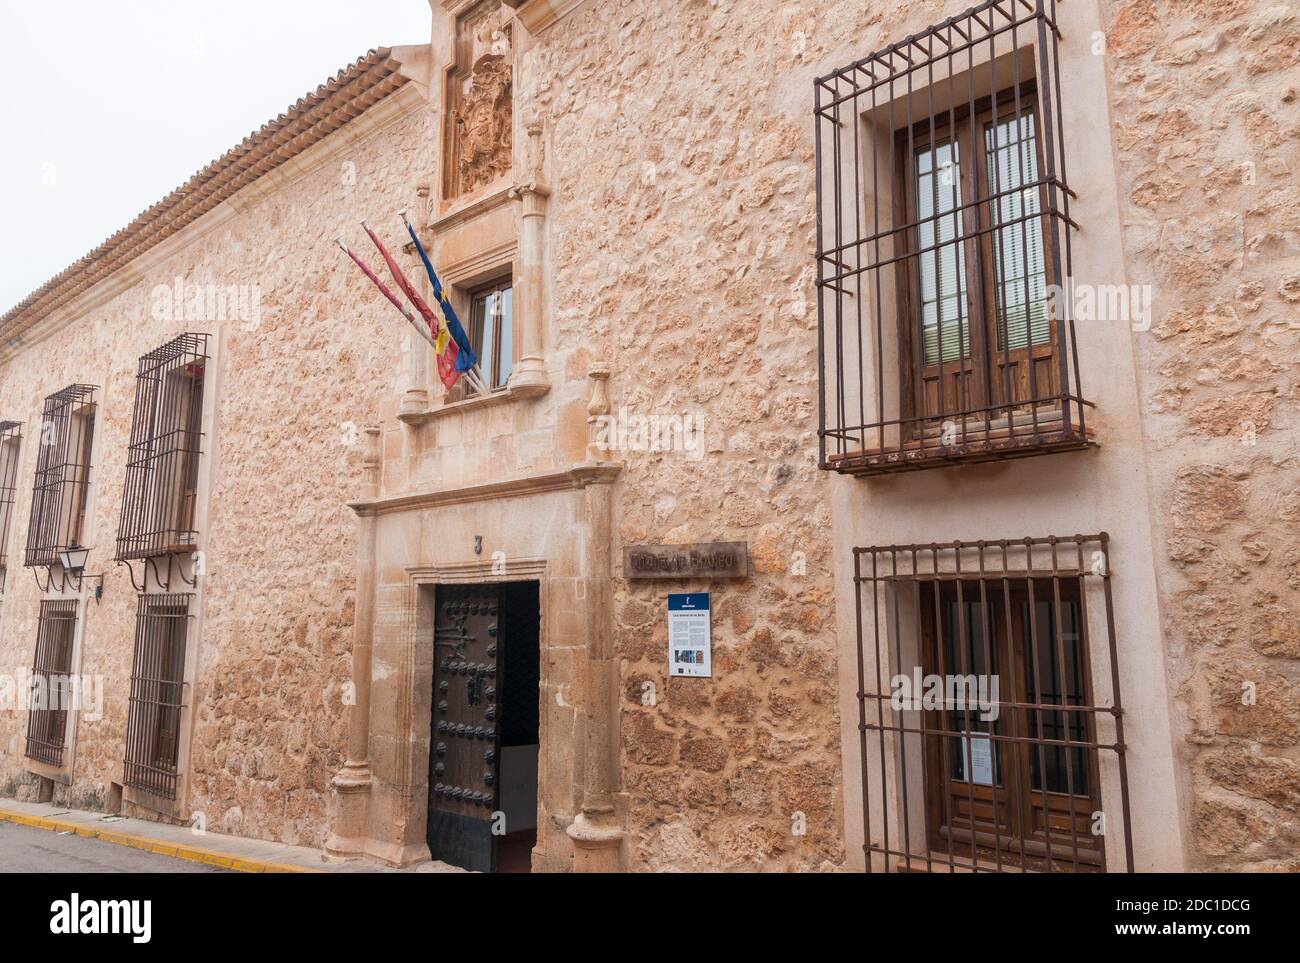 Casa señorial. Belmonte. Provincia de Cuenca. Castilla la Mancha. España. Stock Photo